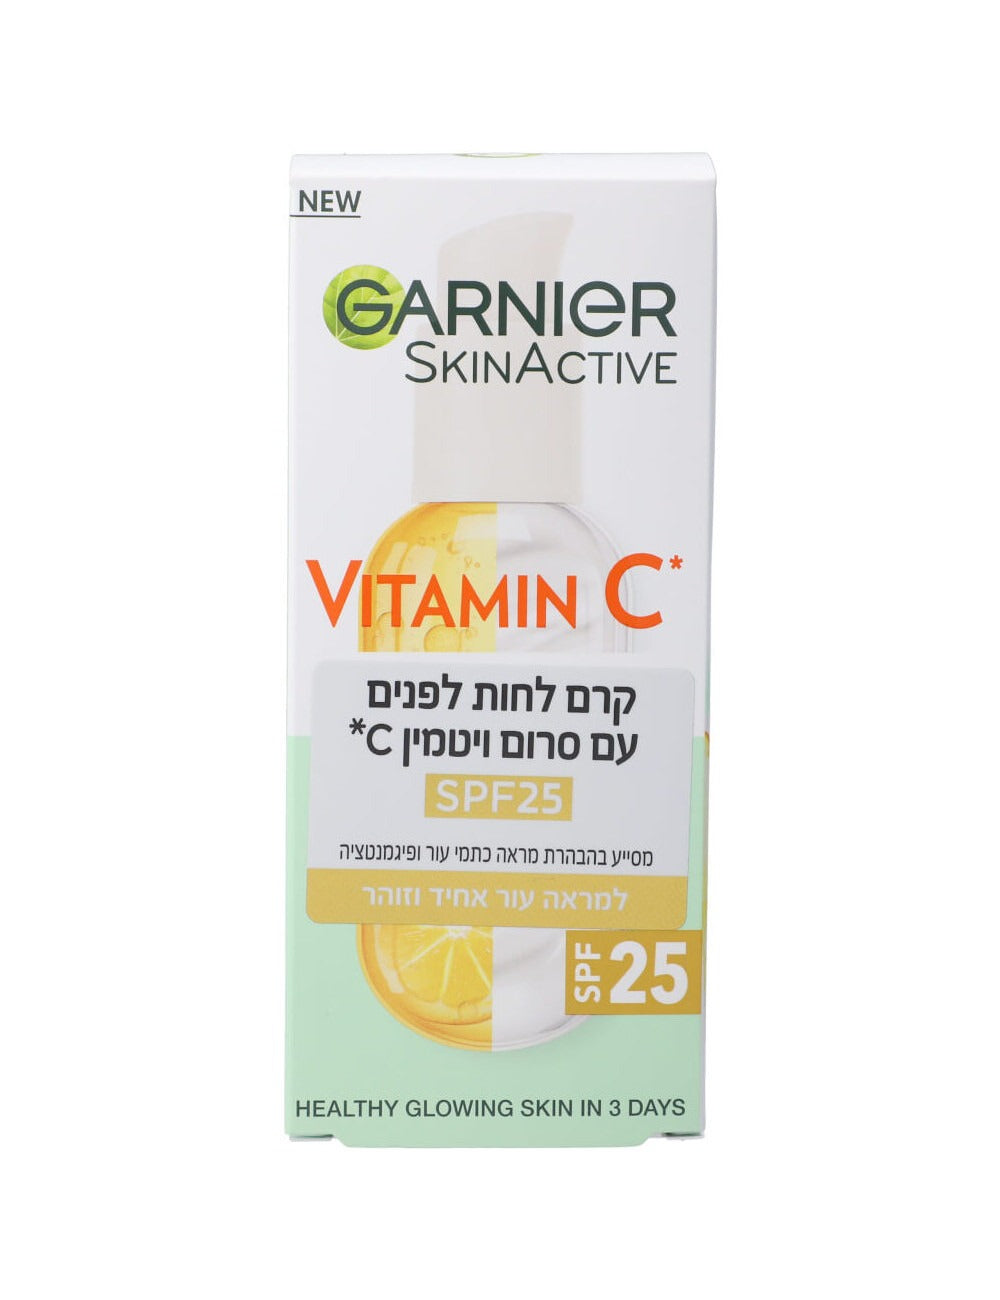 Garnier Vitamin C + Brightening Serum Cream SPF25 גרנייה קרם ויטמין סי